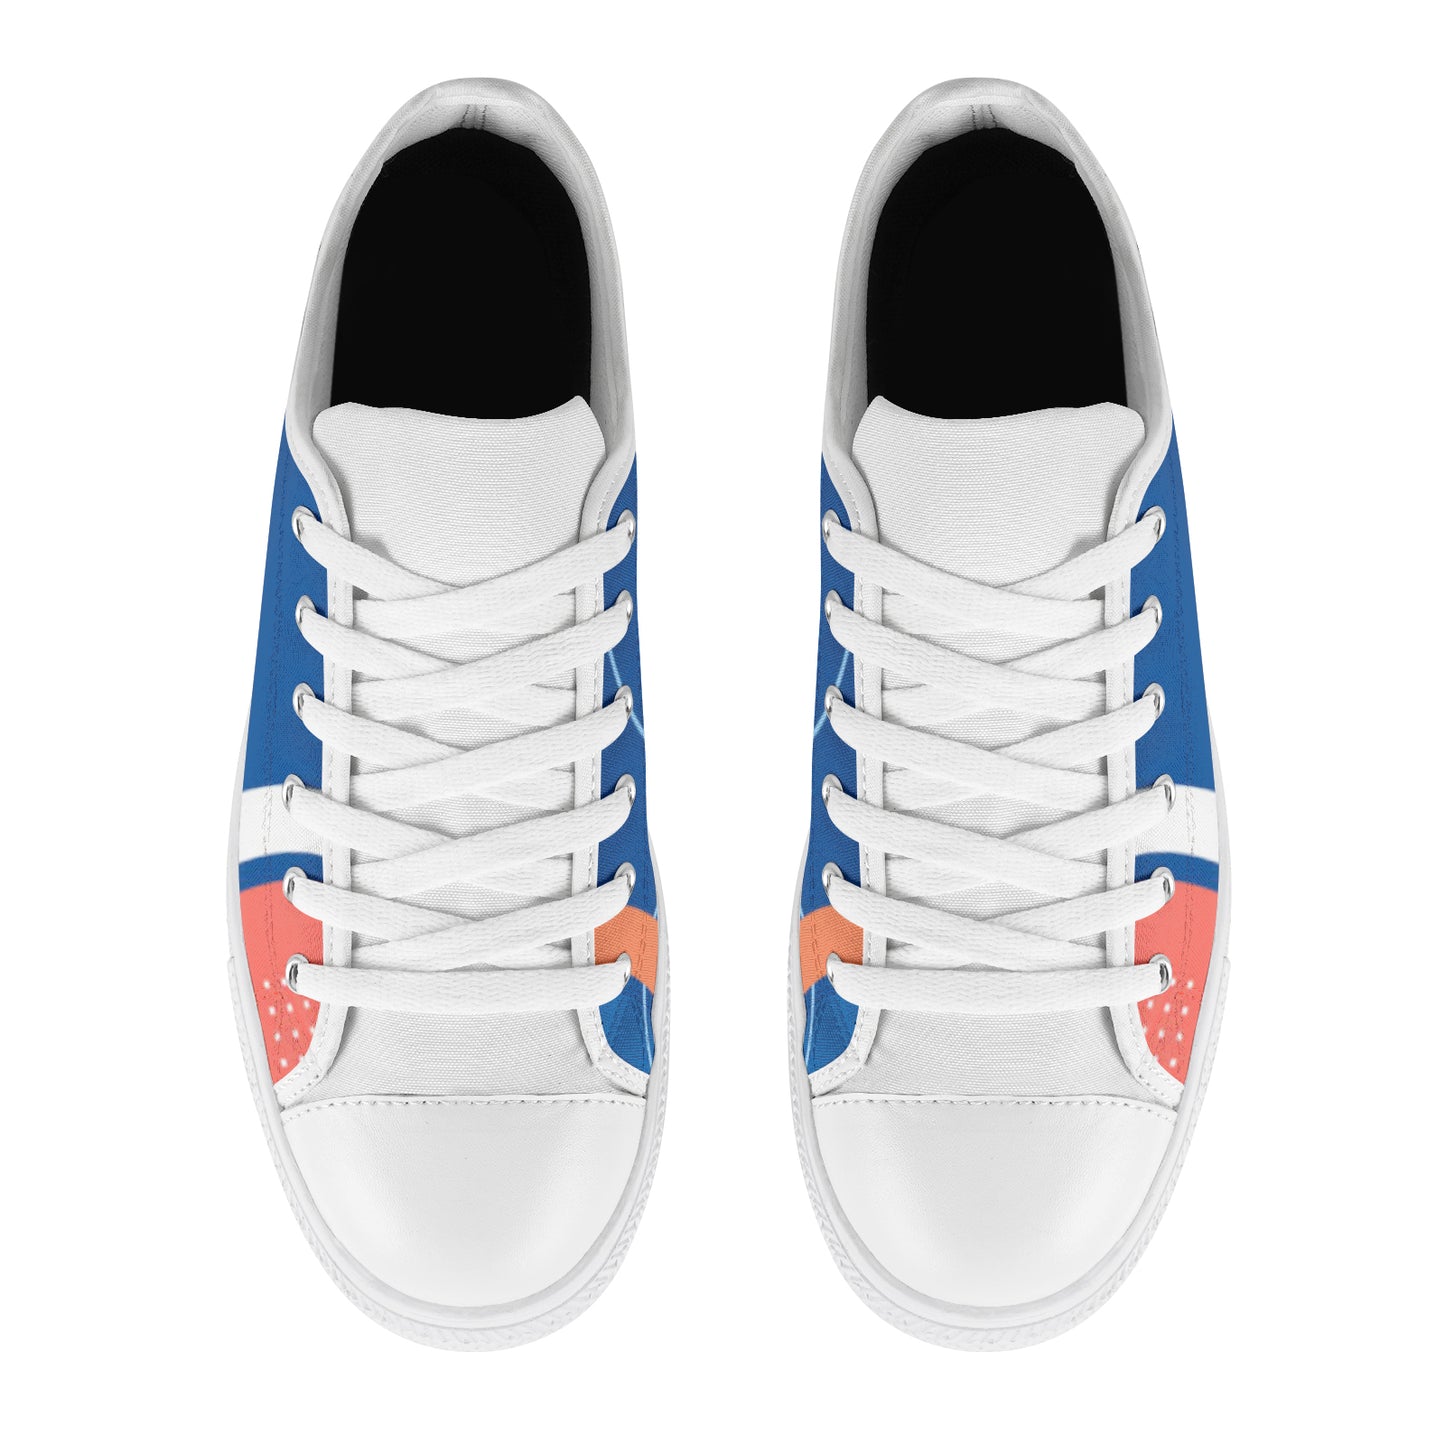 Women's Sneakers- Blue/Orange Combo